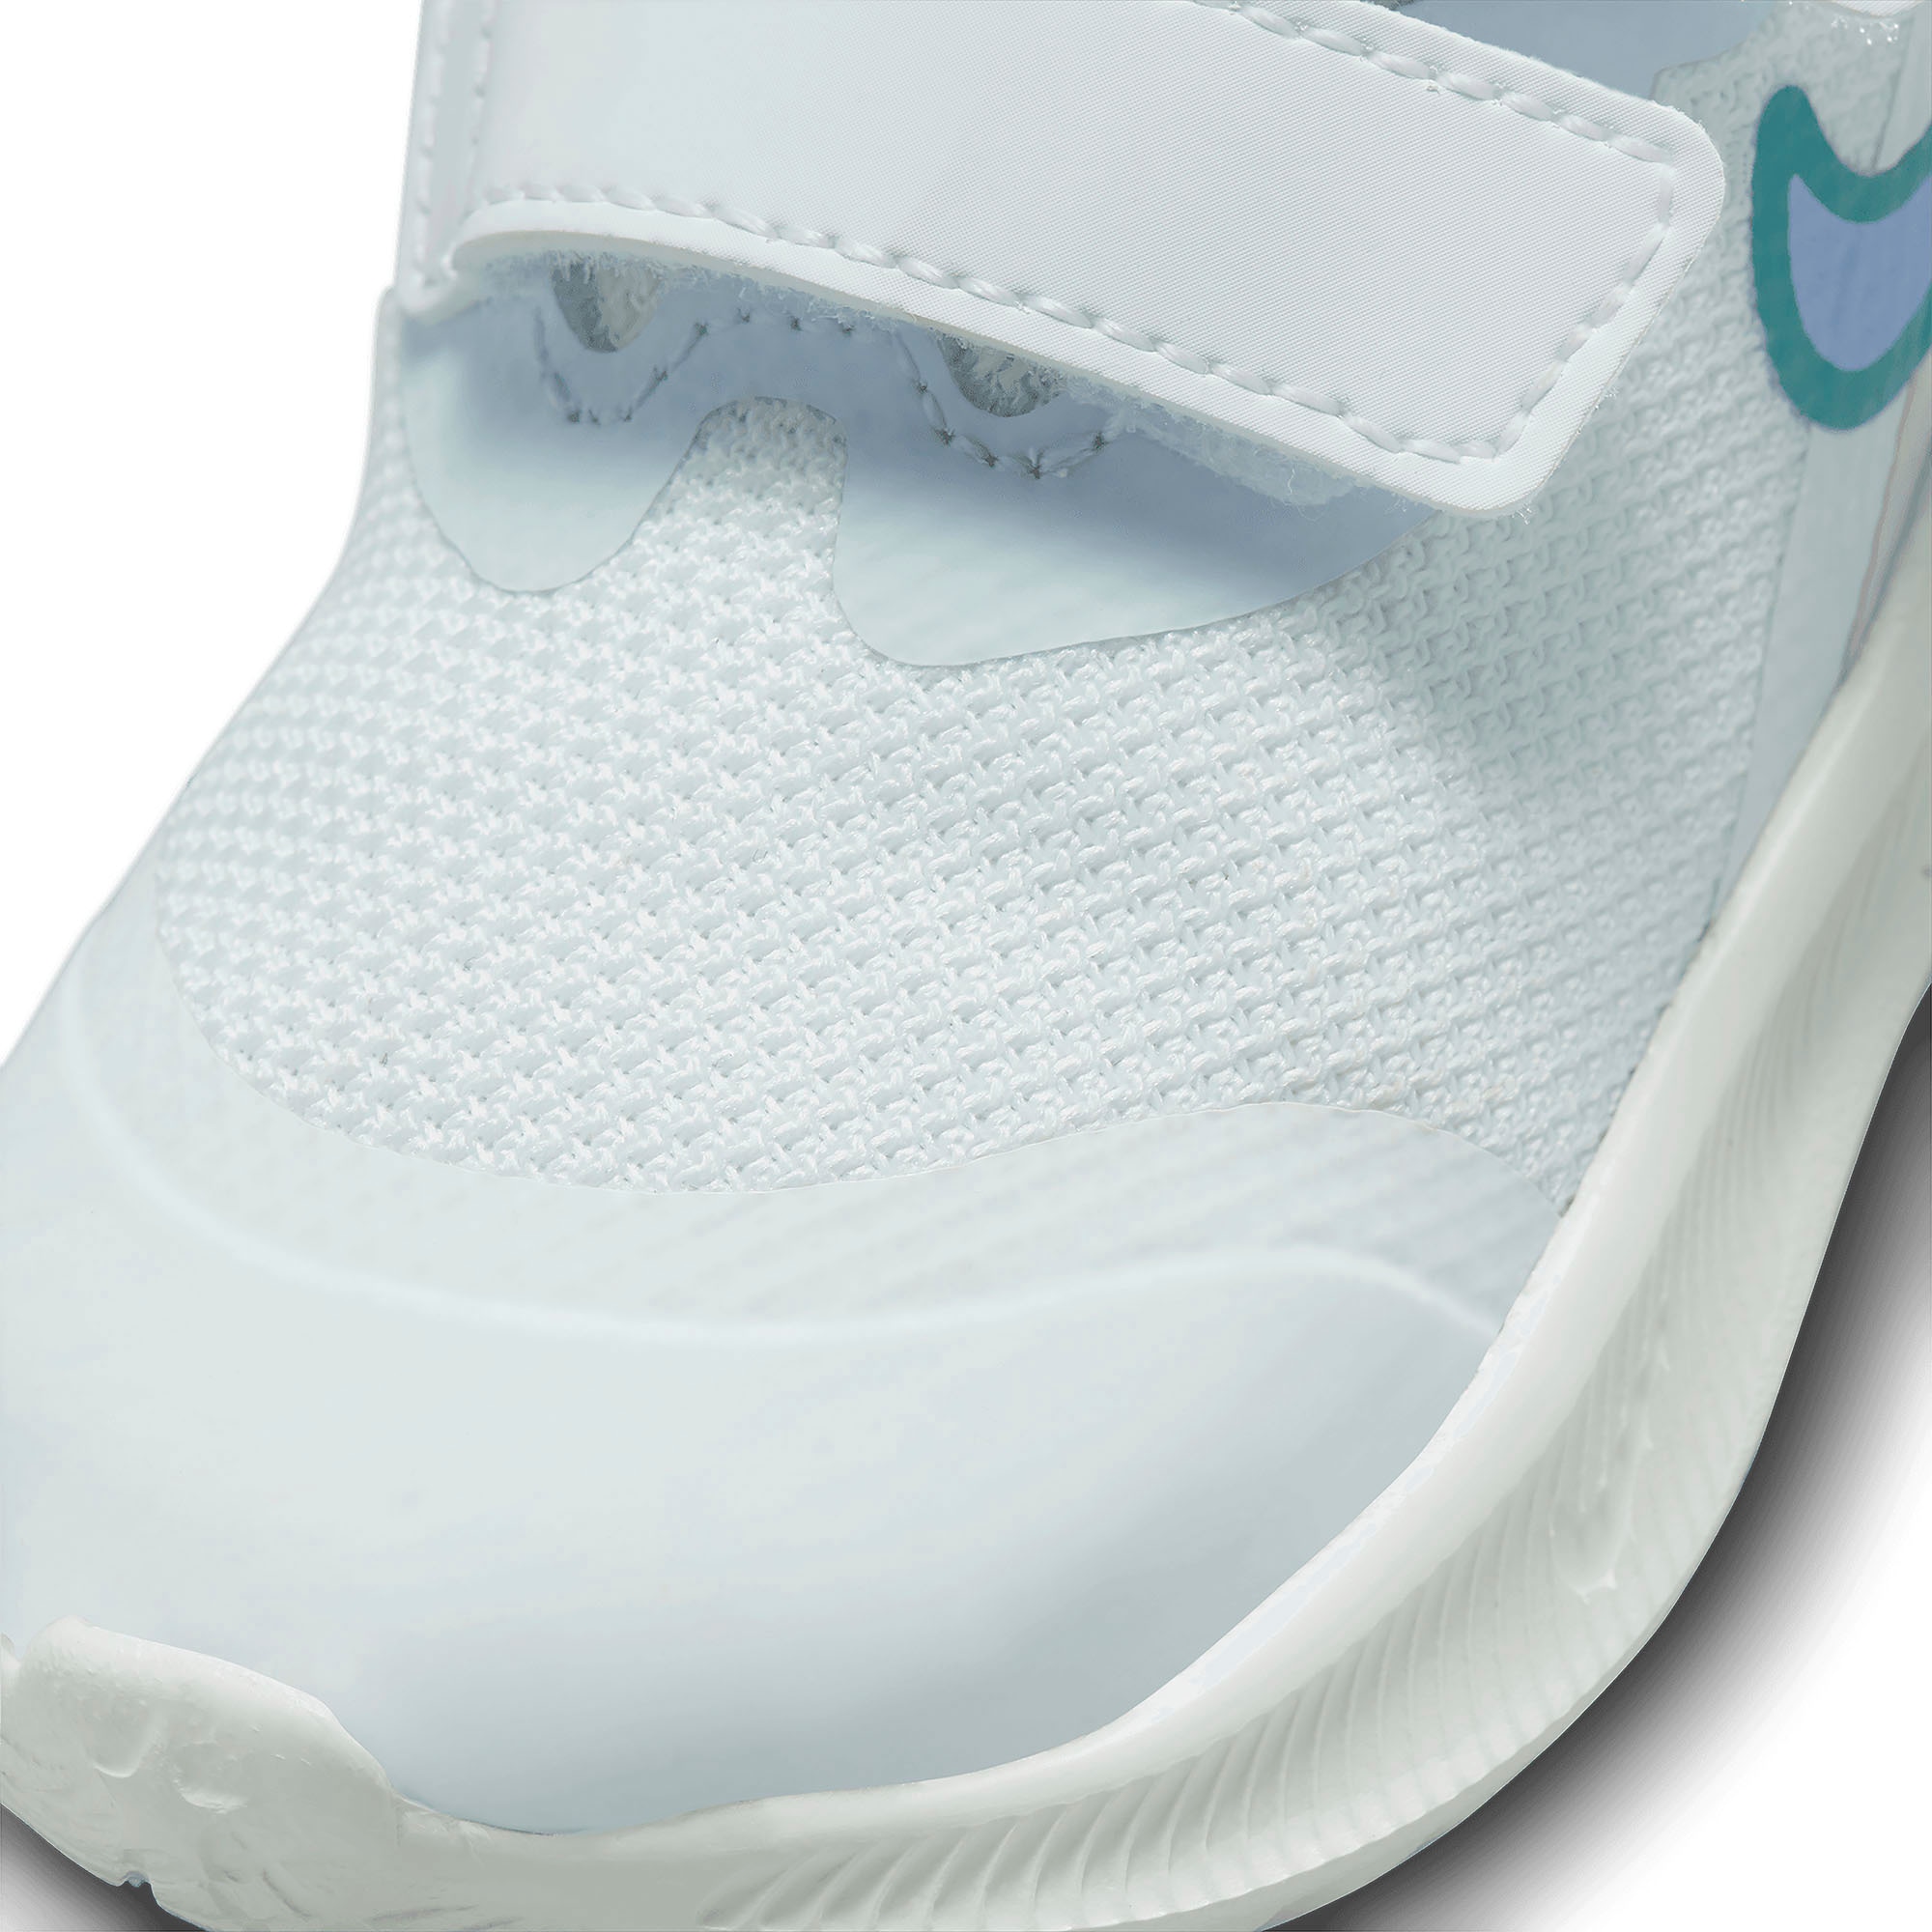 Nike Laufschuh »STAR RUNNER 3 (TD)«, mit Klettverschluss